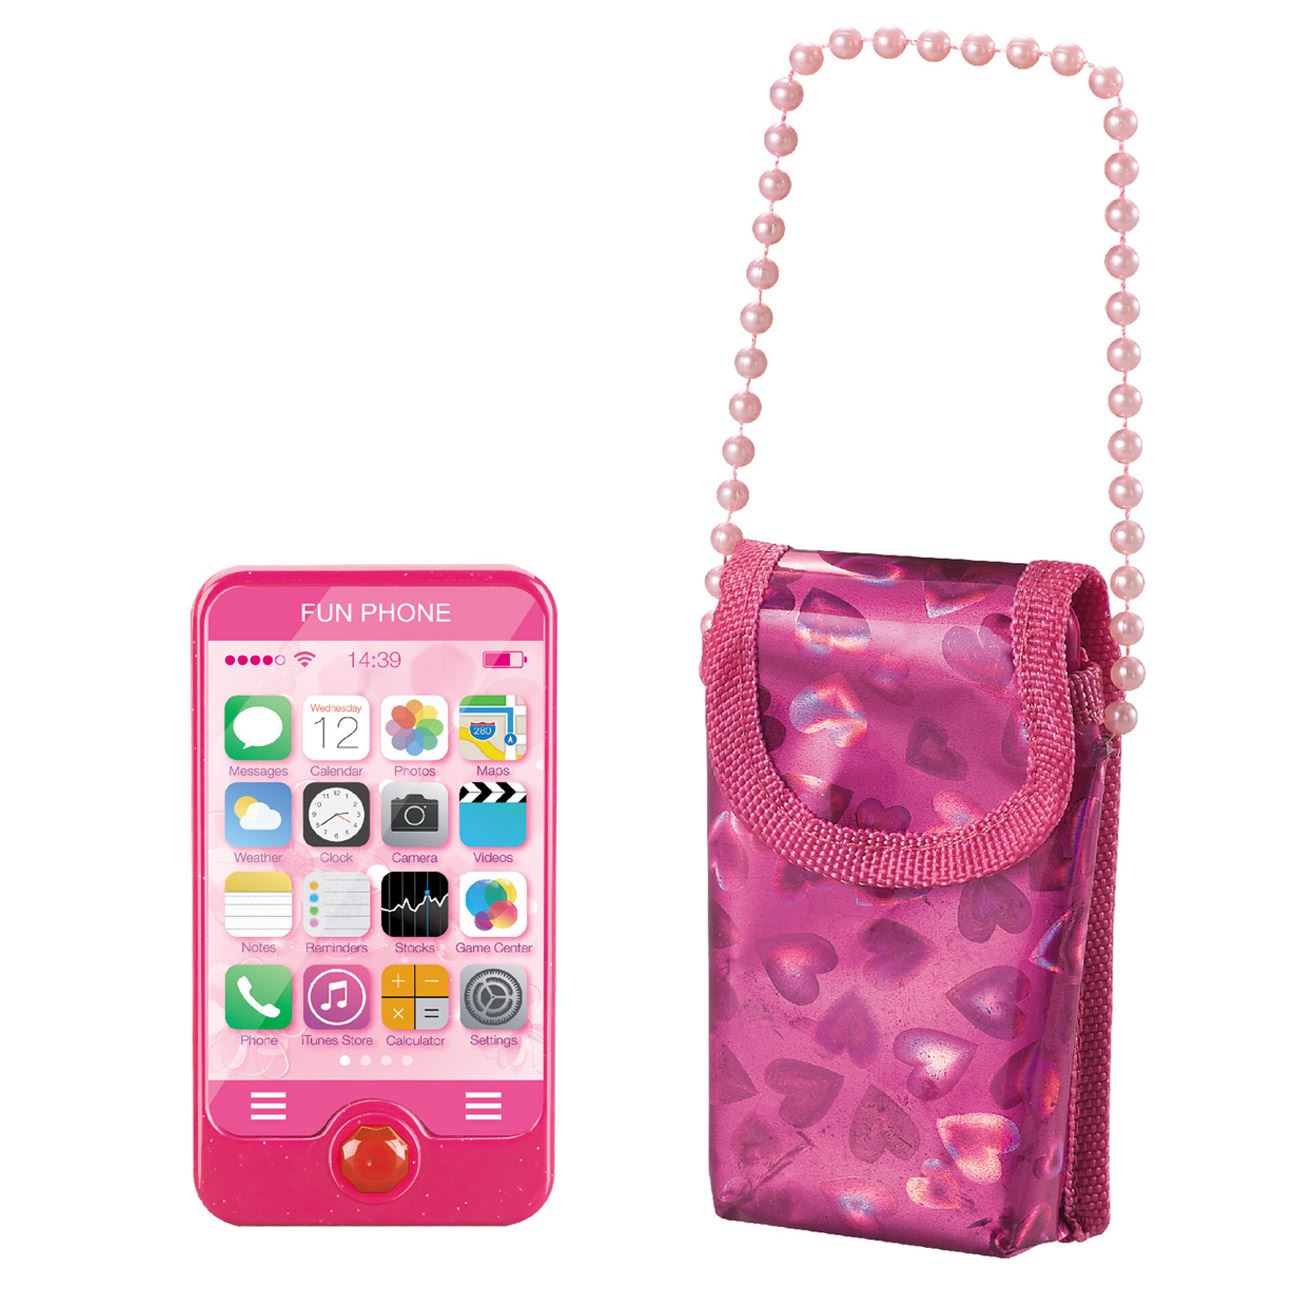 Játék mobiltelefon hanggal és rózsaszín táskával